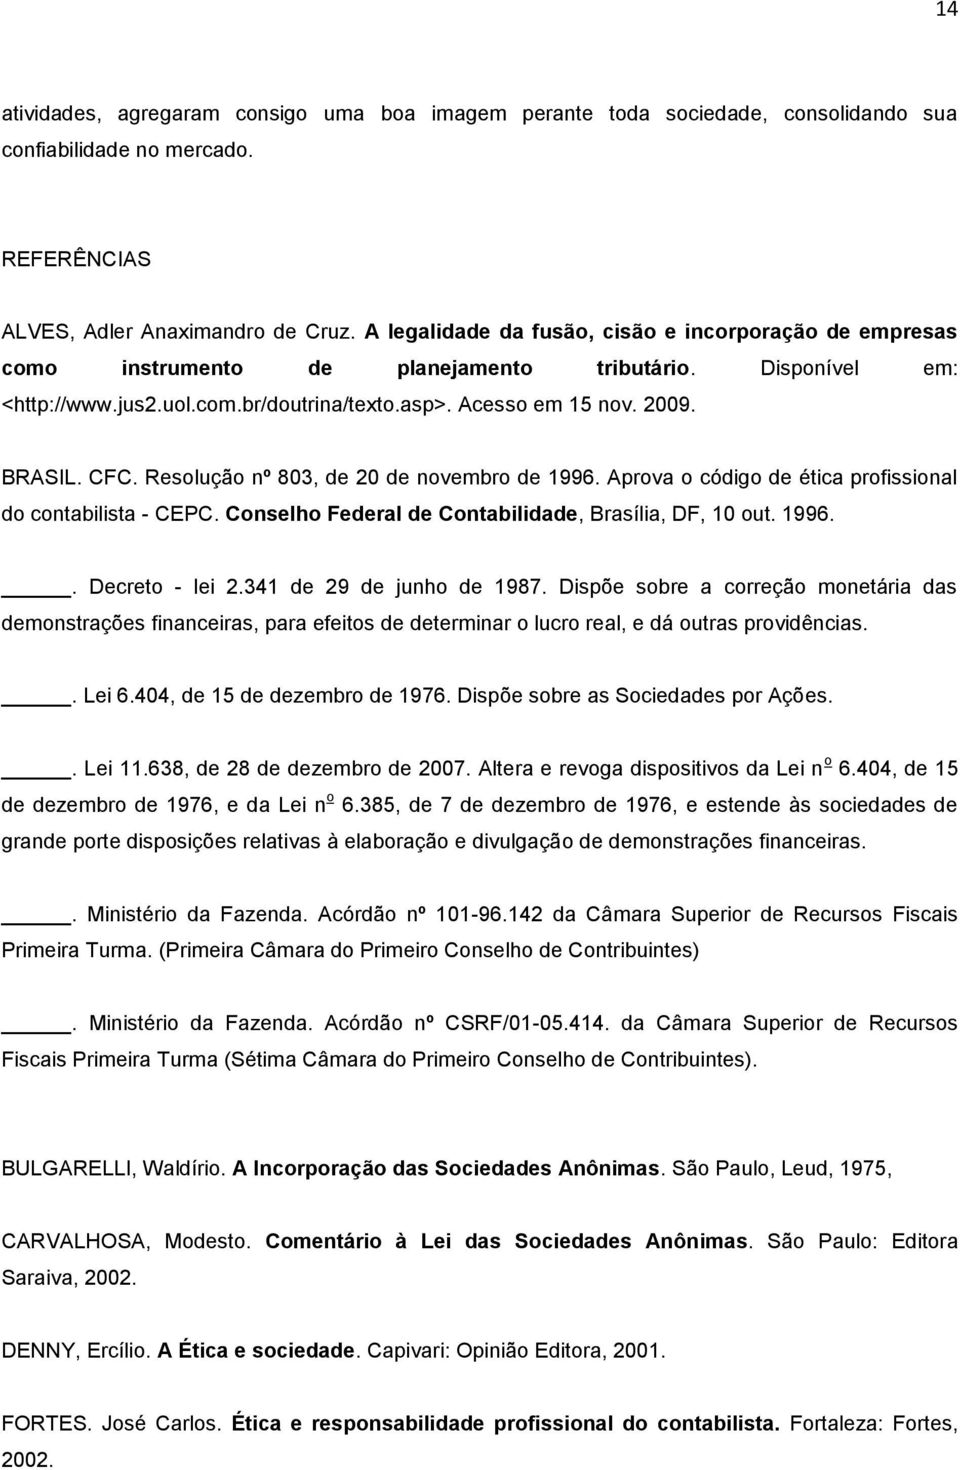 CFC. Resolução nº 803, de 20 de novembro de 1996. Aprova o código de ética profissional do contabilista - CEPC. Conselho Federal de Contabilidade, Brasília, DF, 10 out. 1996.. Decreto - lei 2.